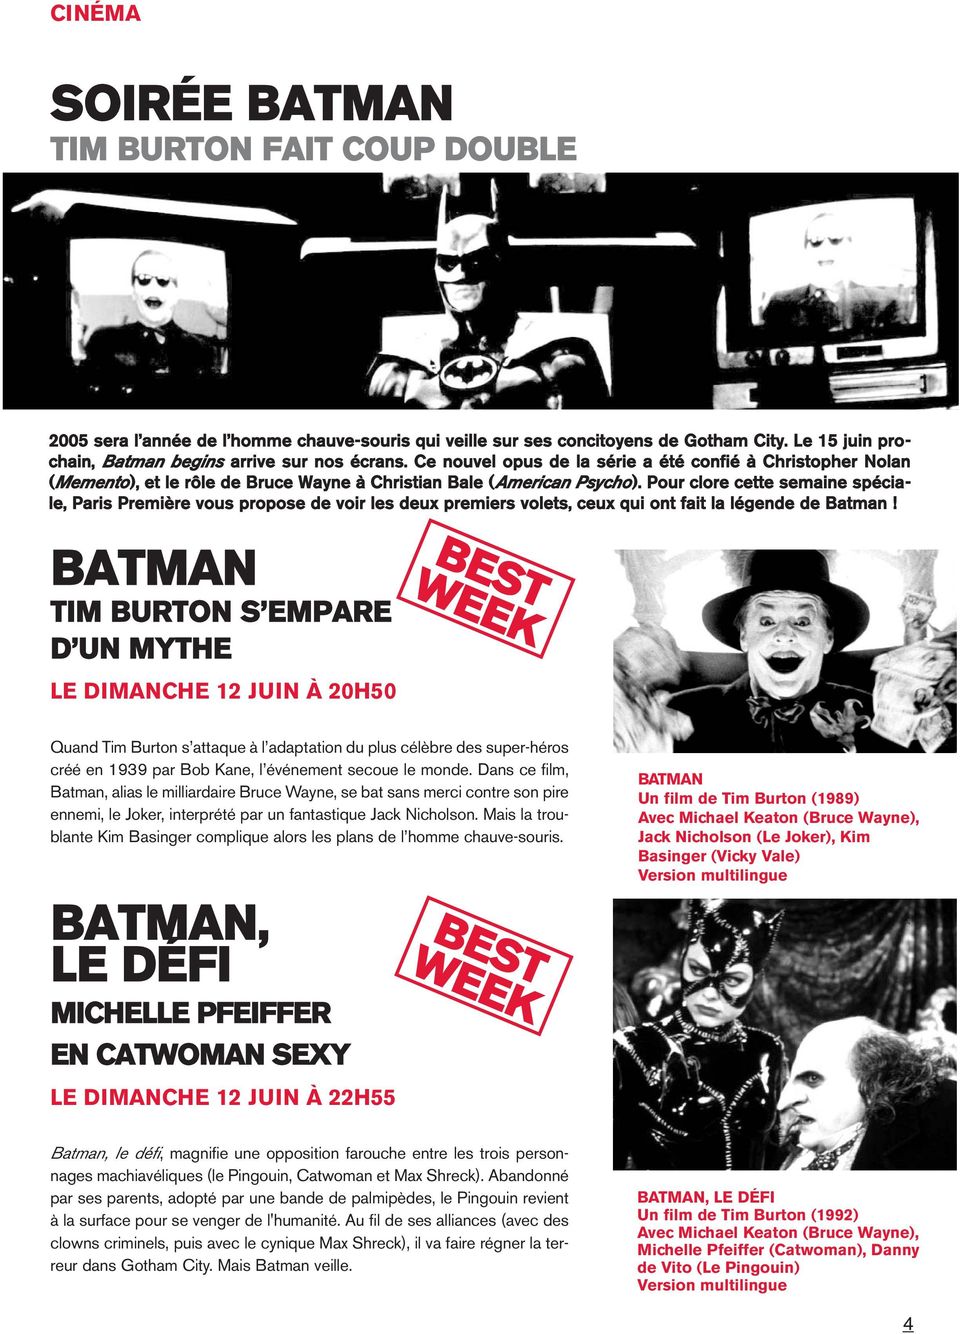 Pour clore cette semaine spéciale, Paris Première vous propose de voir les deux premiers volets, ceux qui ont fait la légende de Batman!